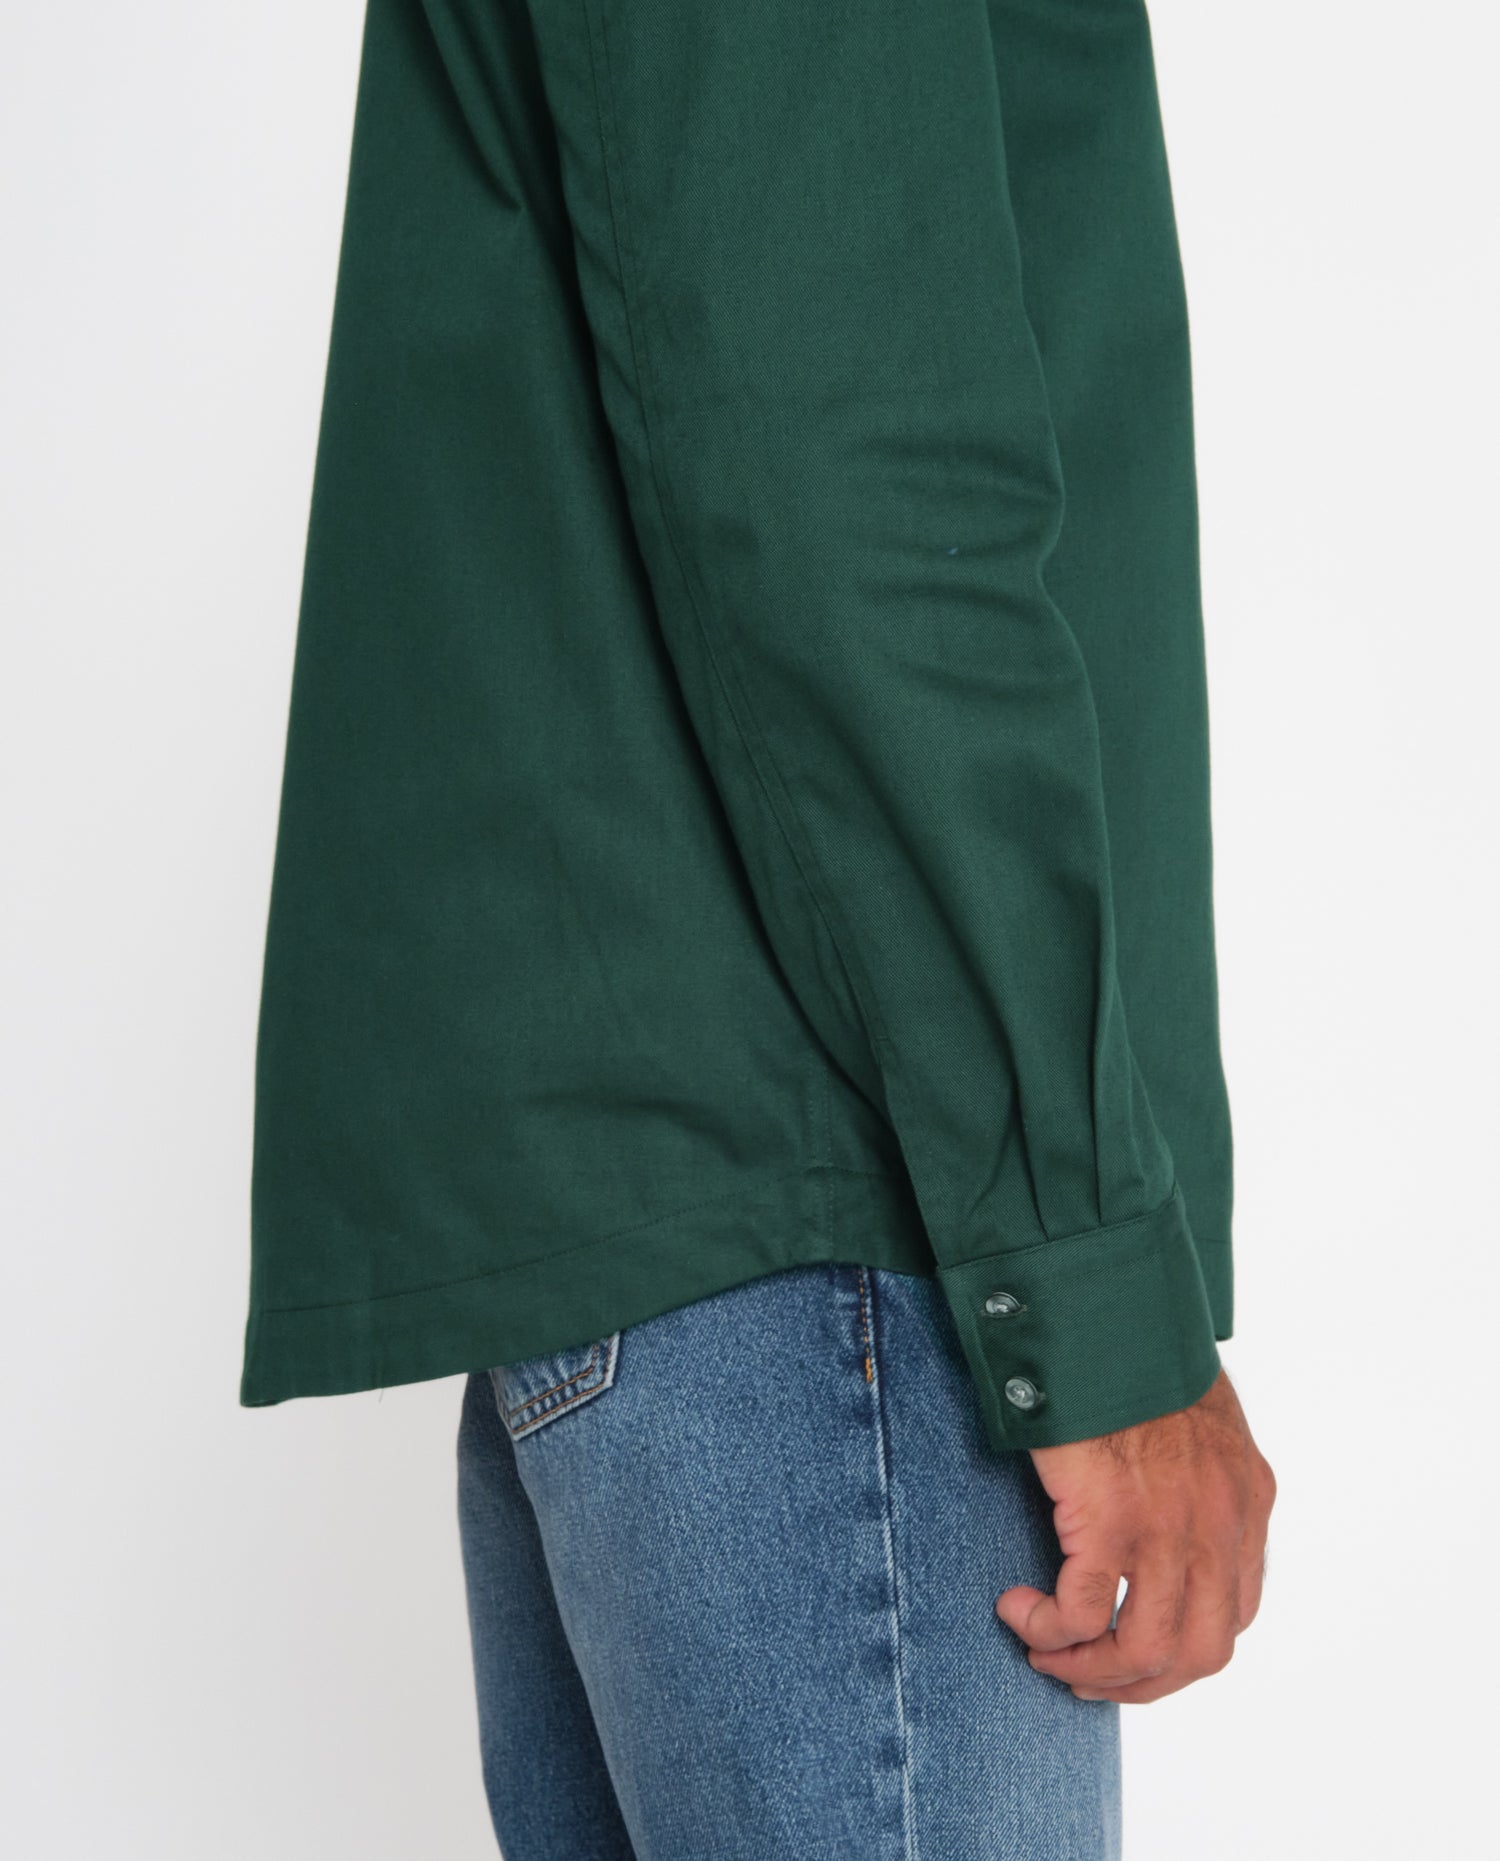 marché commun noyoco chemise homme coton biologique éco-responsable fabriquée en Europe rayée vert jade